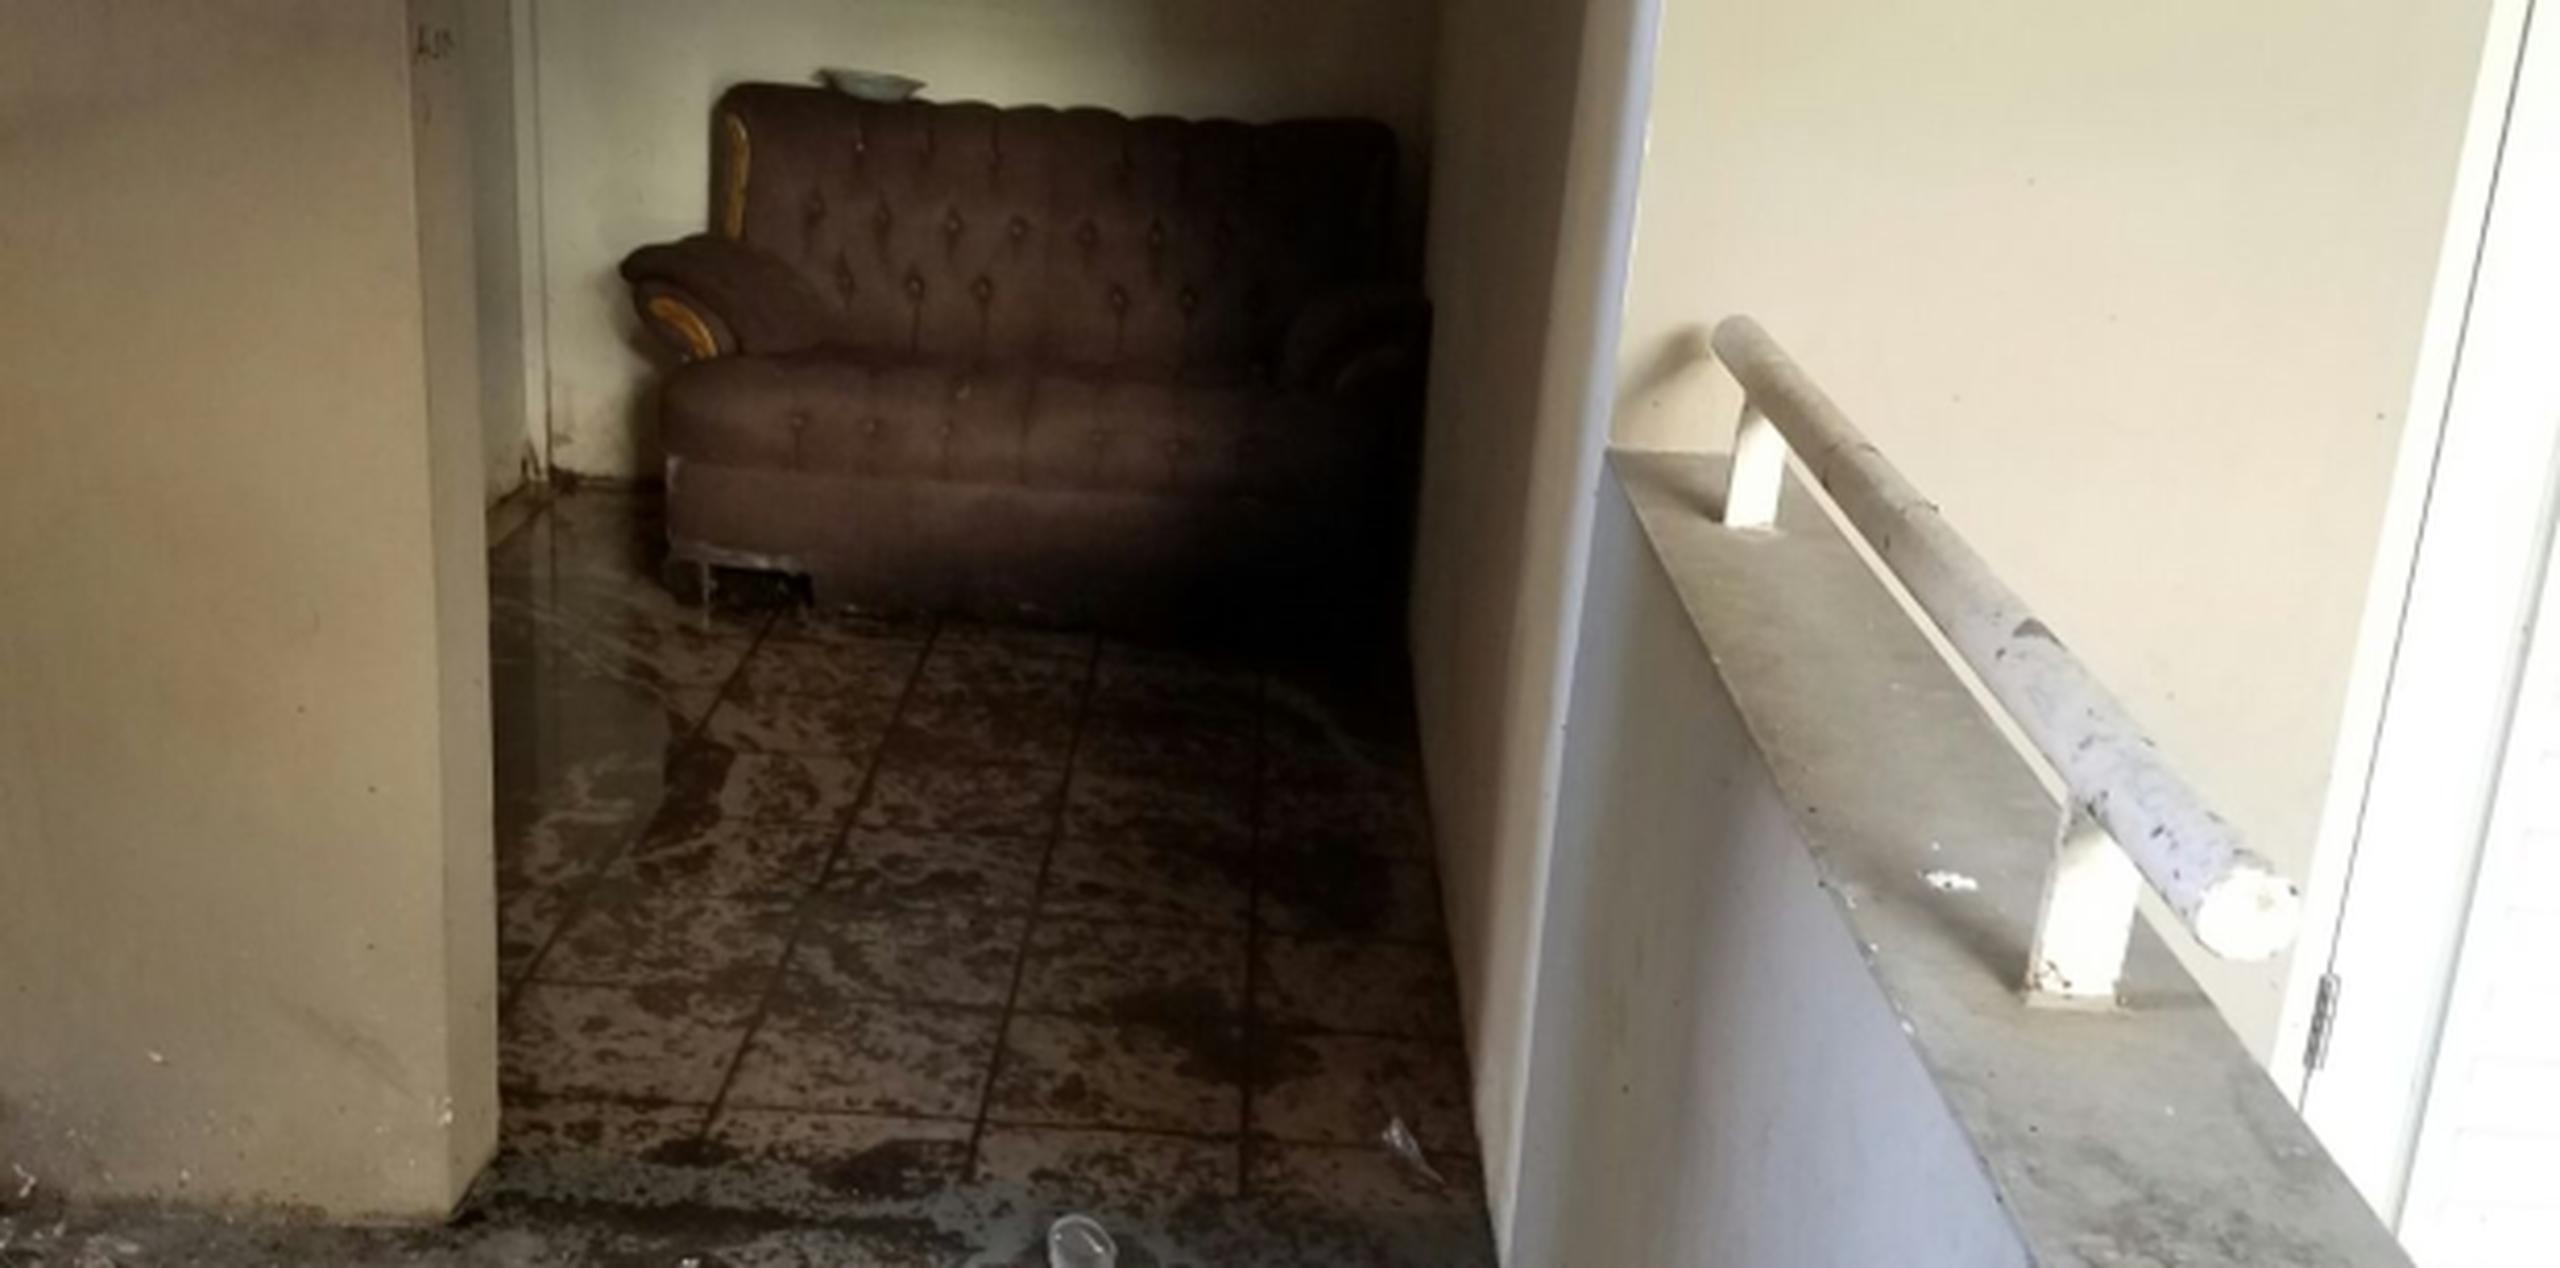 Vistazo parcial de una residencia afectada por el problema de aguas negras en Lares. (Suministrada)